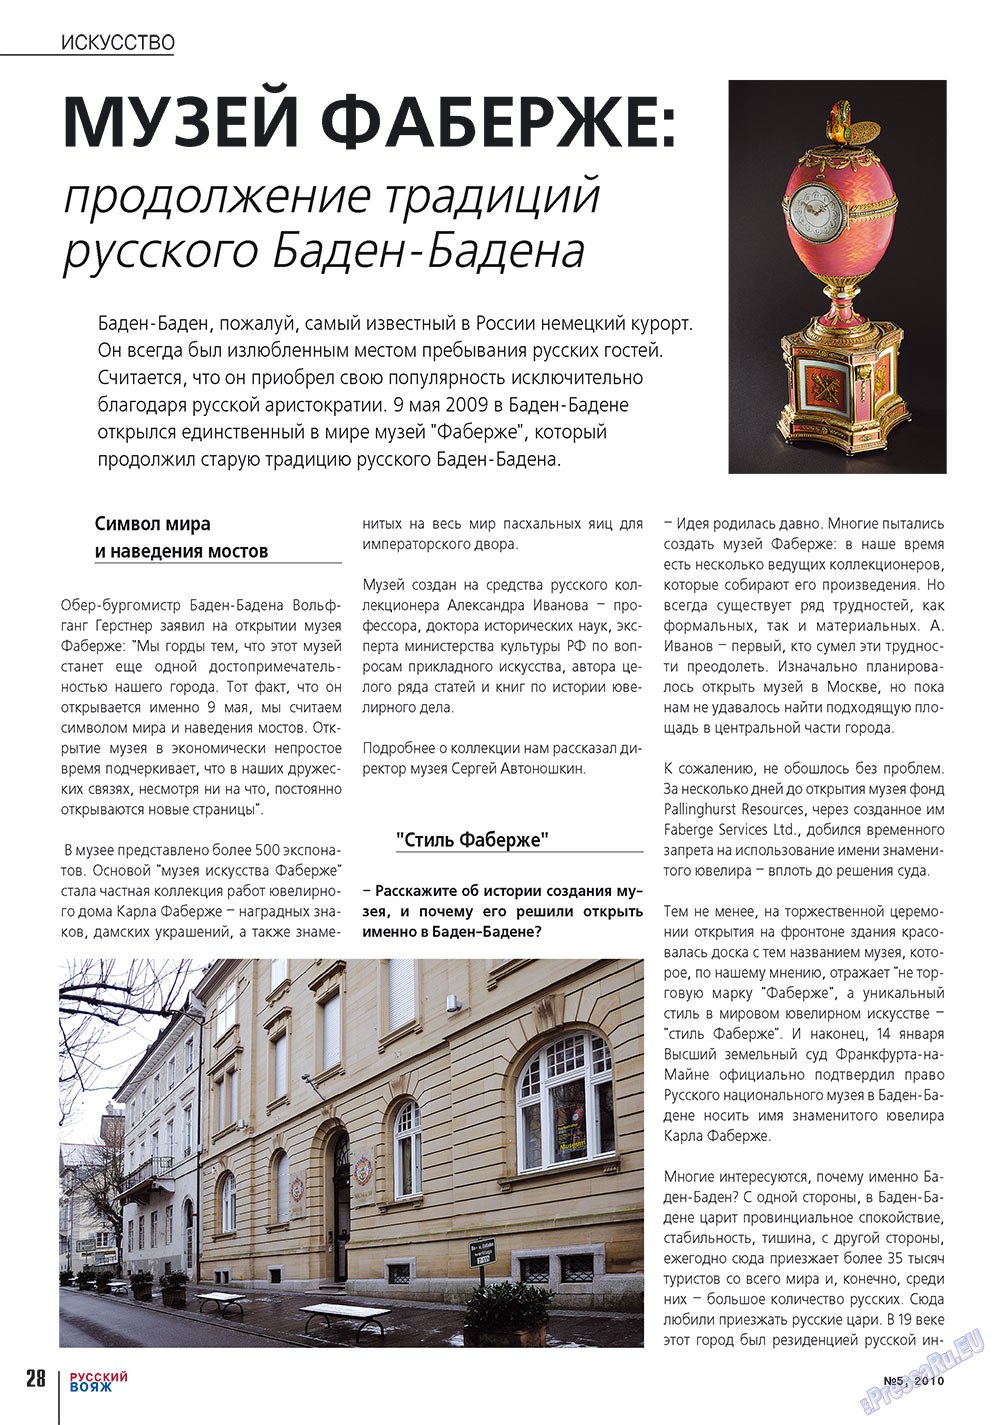 Русский вояж (журнал). 2010 год, номер 5, стр. 28